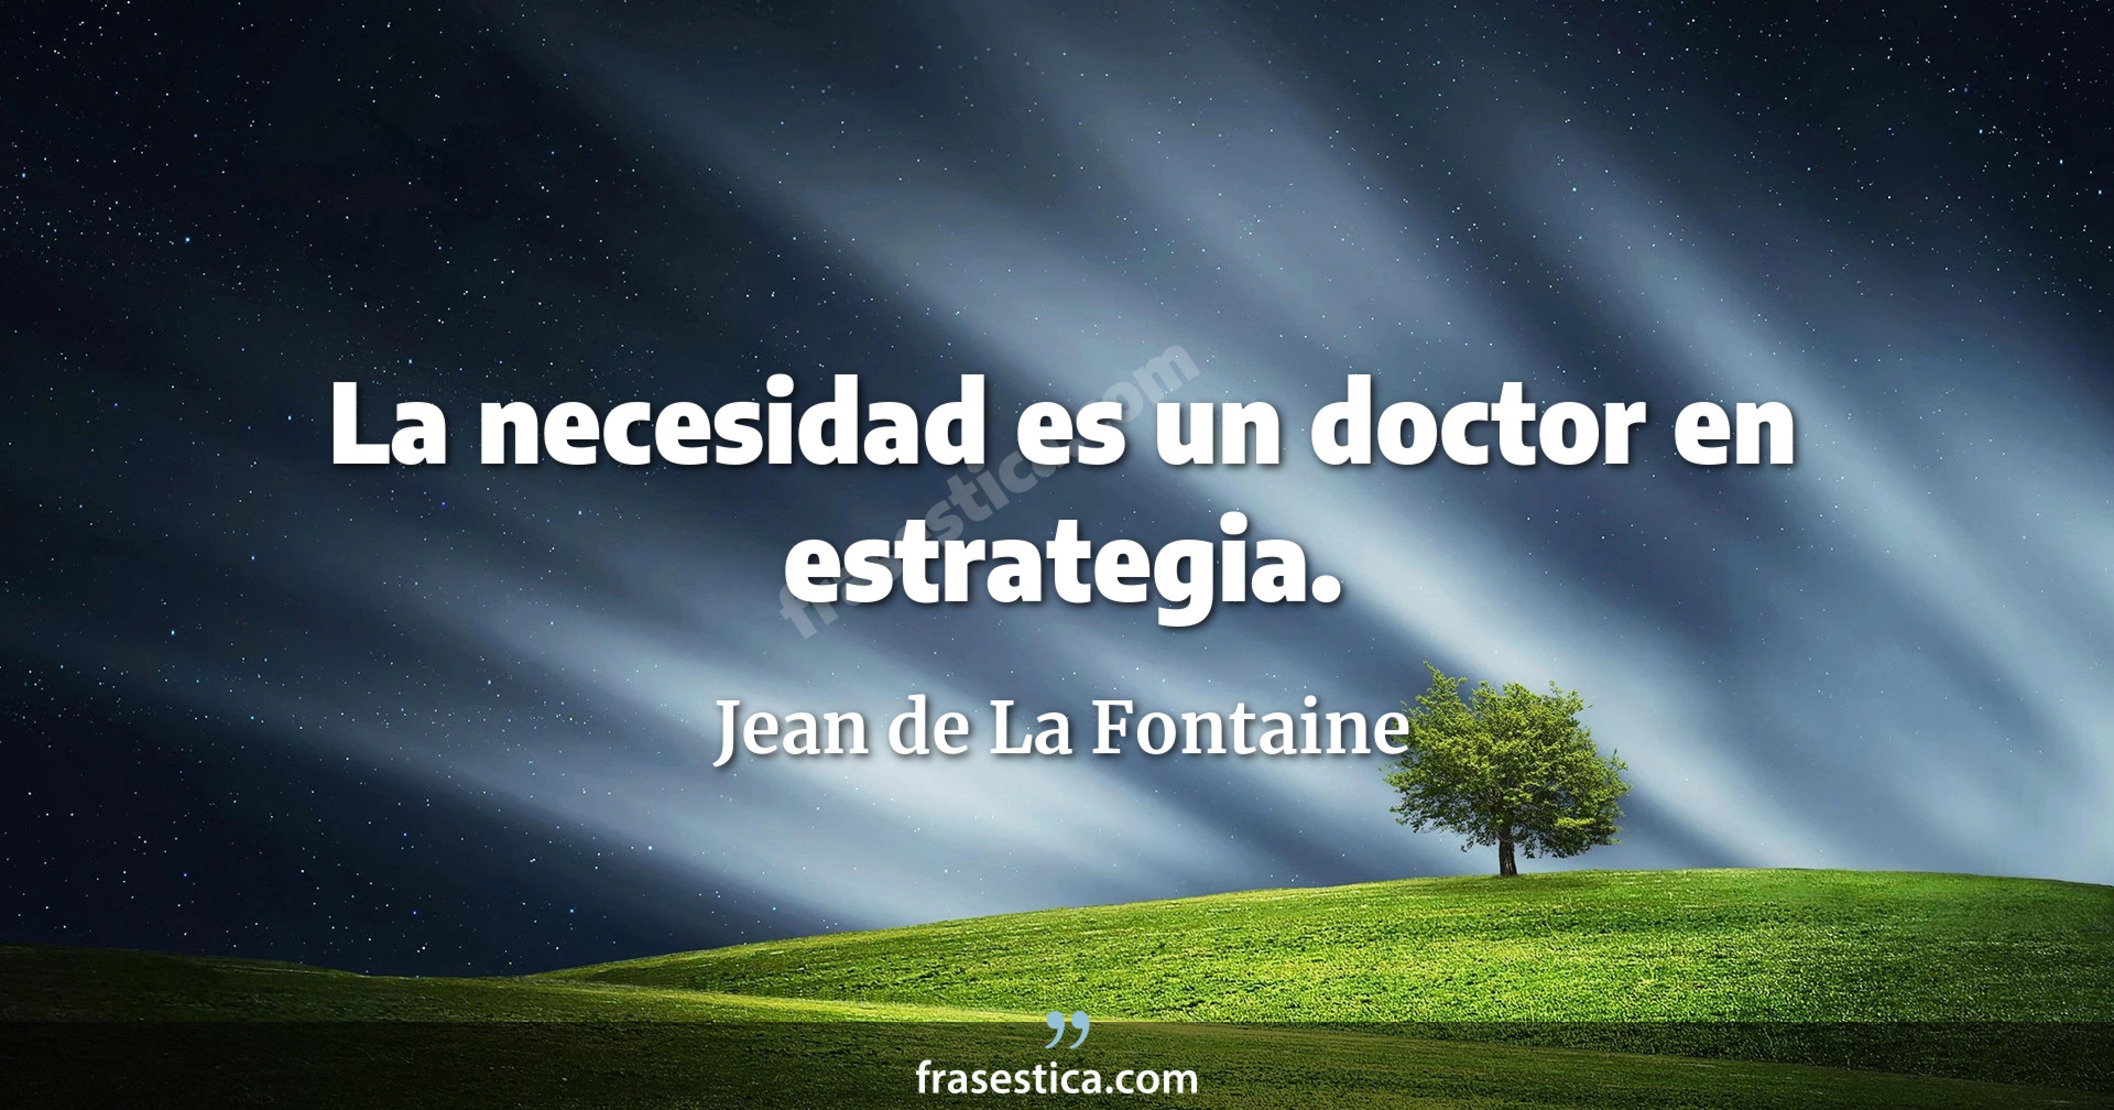 La necesidad es un doctor en estrategia. - Jean de La Fontaine